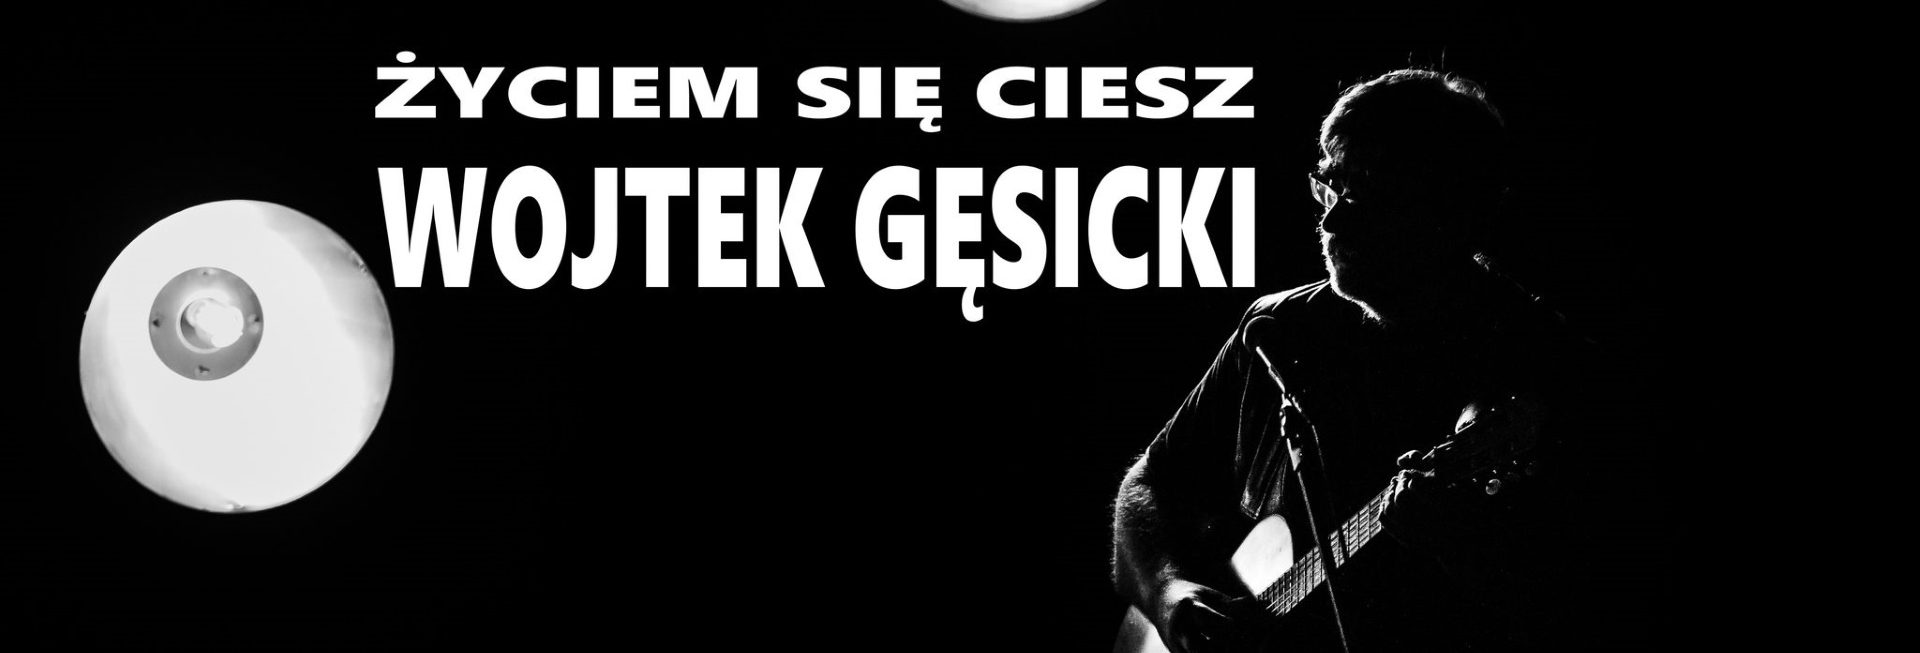 Plakat graficzny zapraszający do Olsztyna na koncert - recital Wojtka Gęsickiego "Życiem się ciesz" Olsztyn 2022.